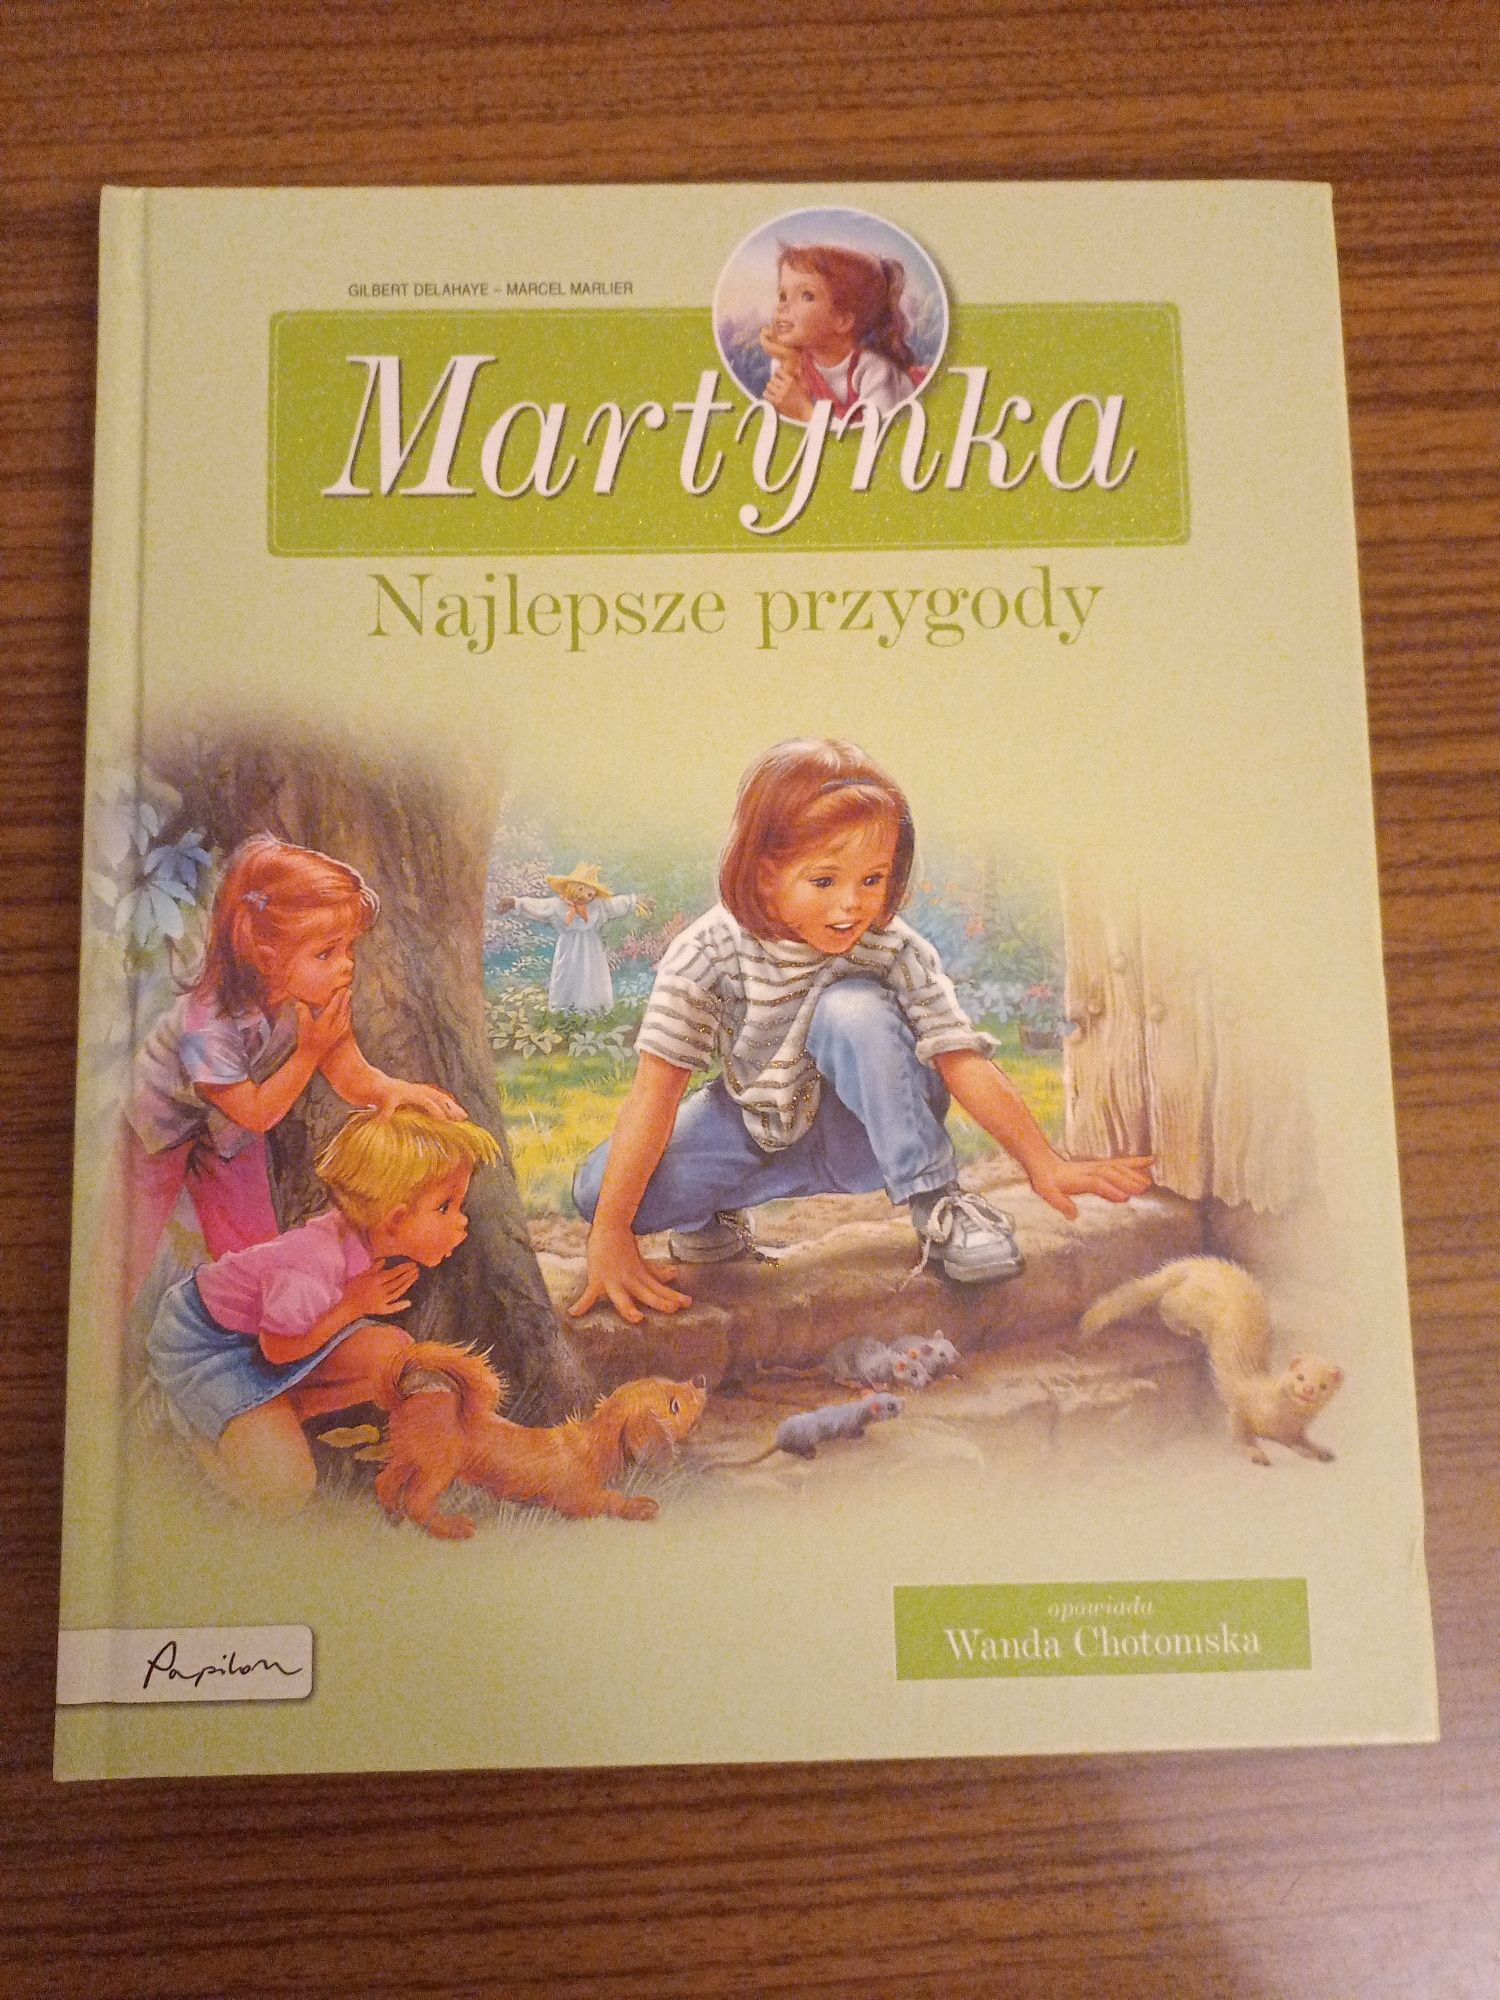 "Martynka. Najlepsze przygody."